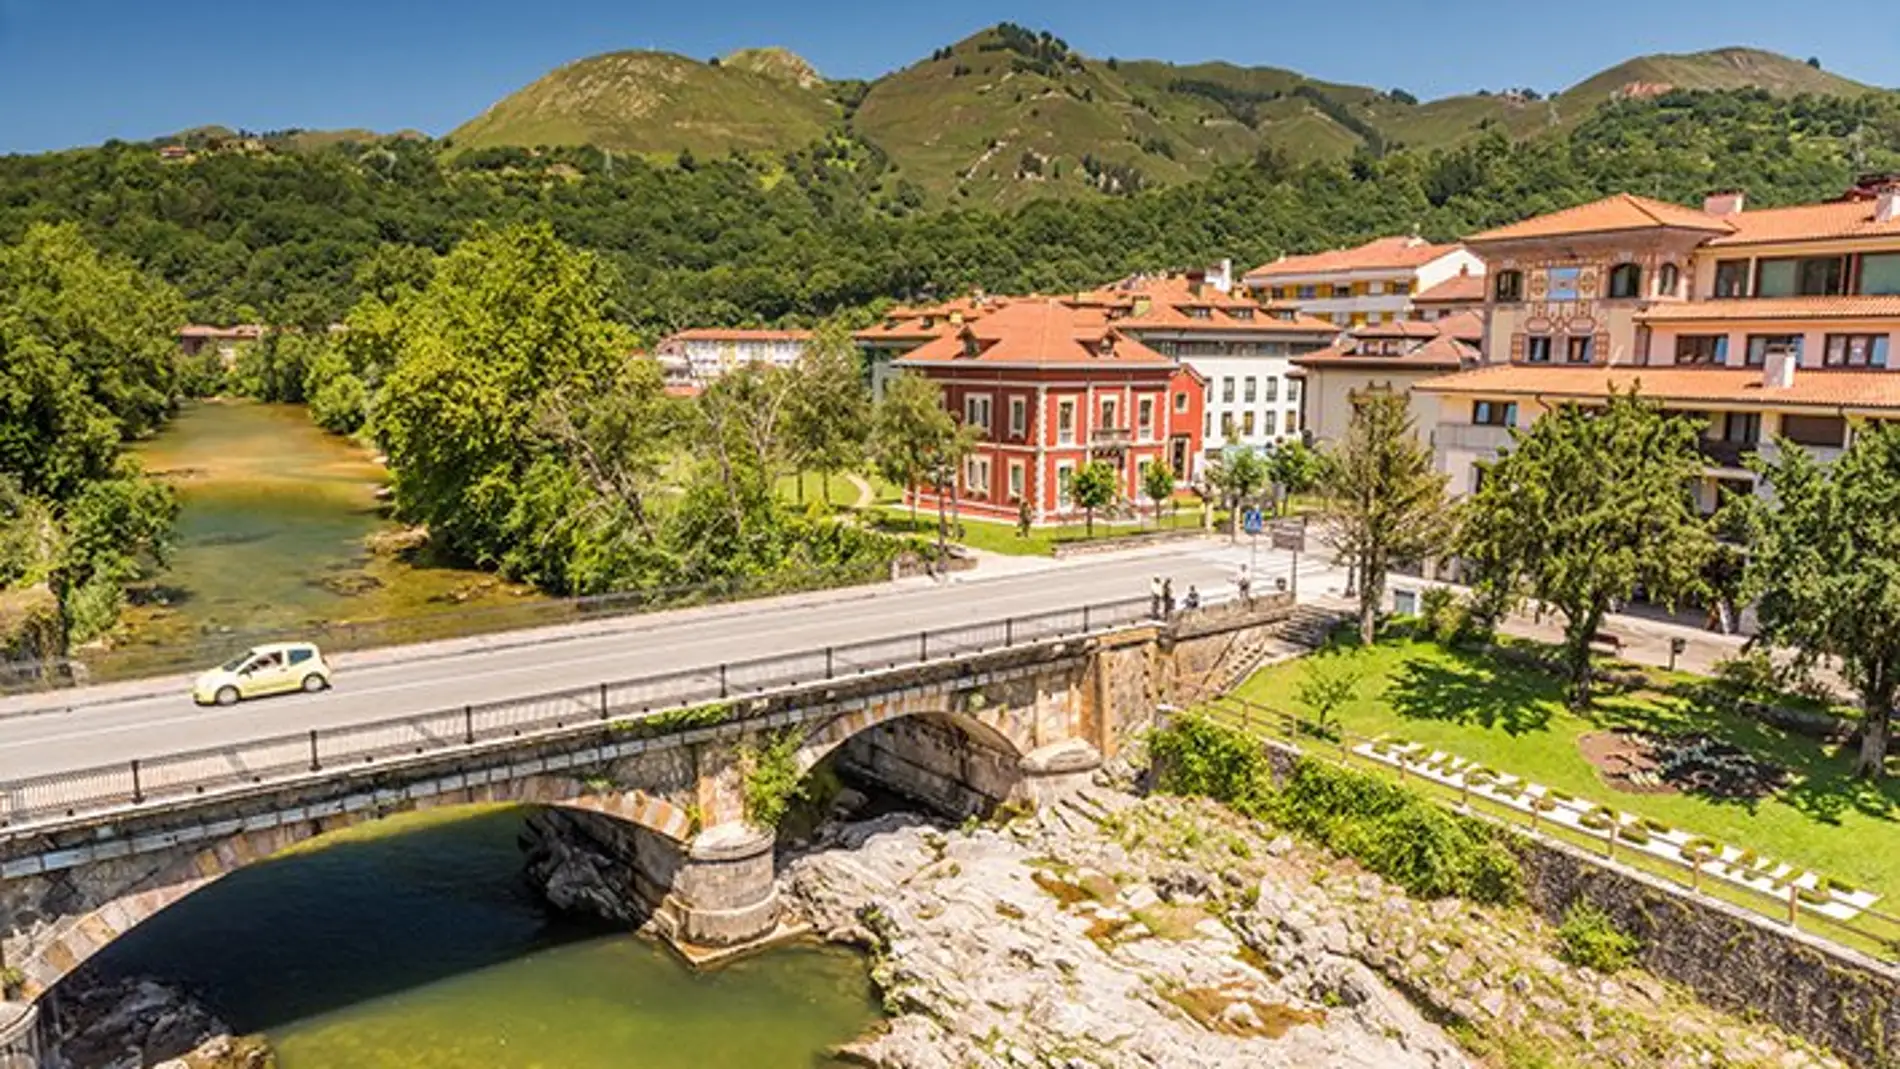 Cangas de Onís: la primera capital del Reino de Asturias y la primera monarquía de la Península